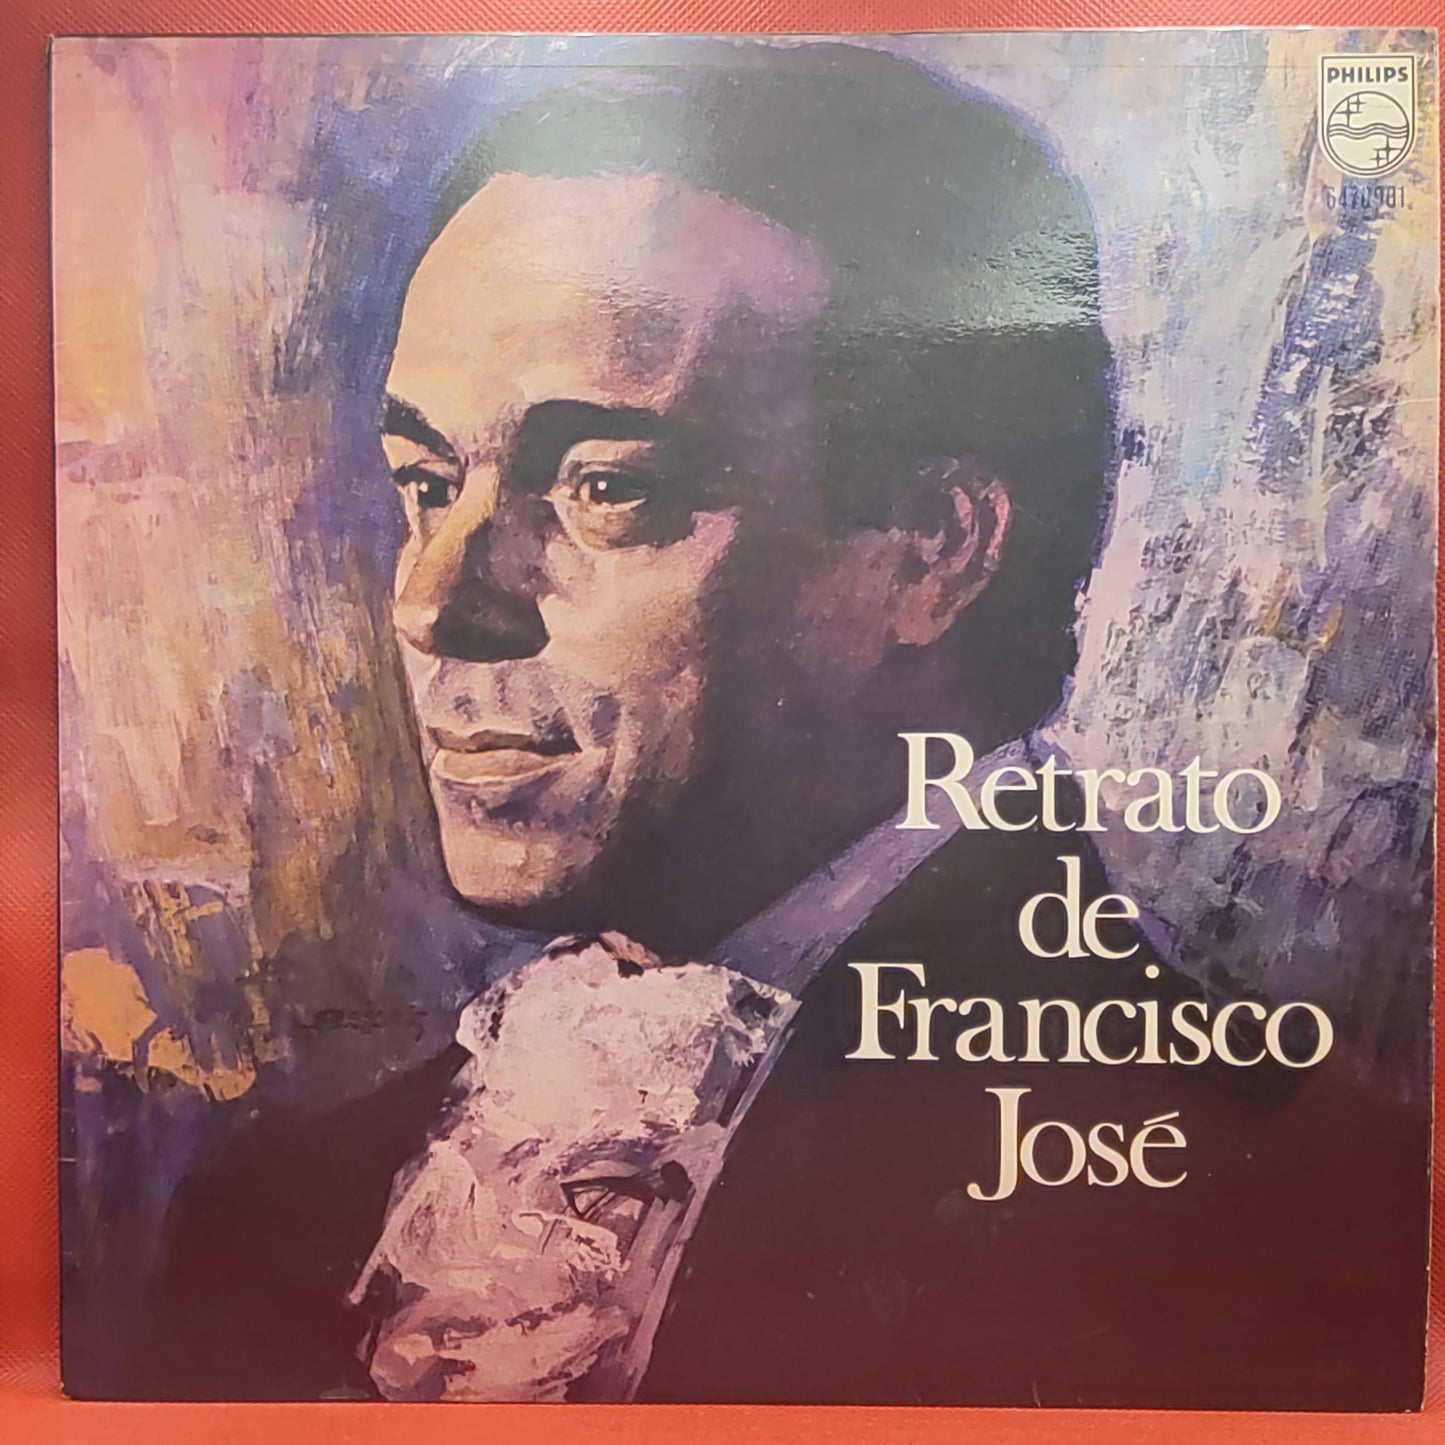 Francisco José – Retrato de Francisco José